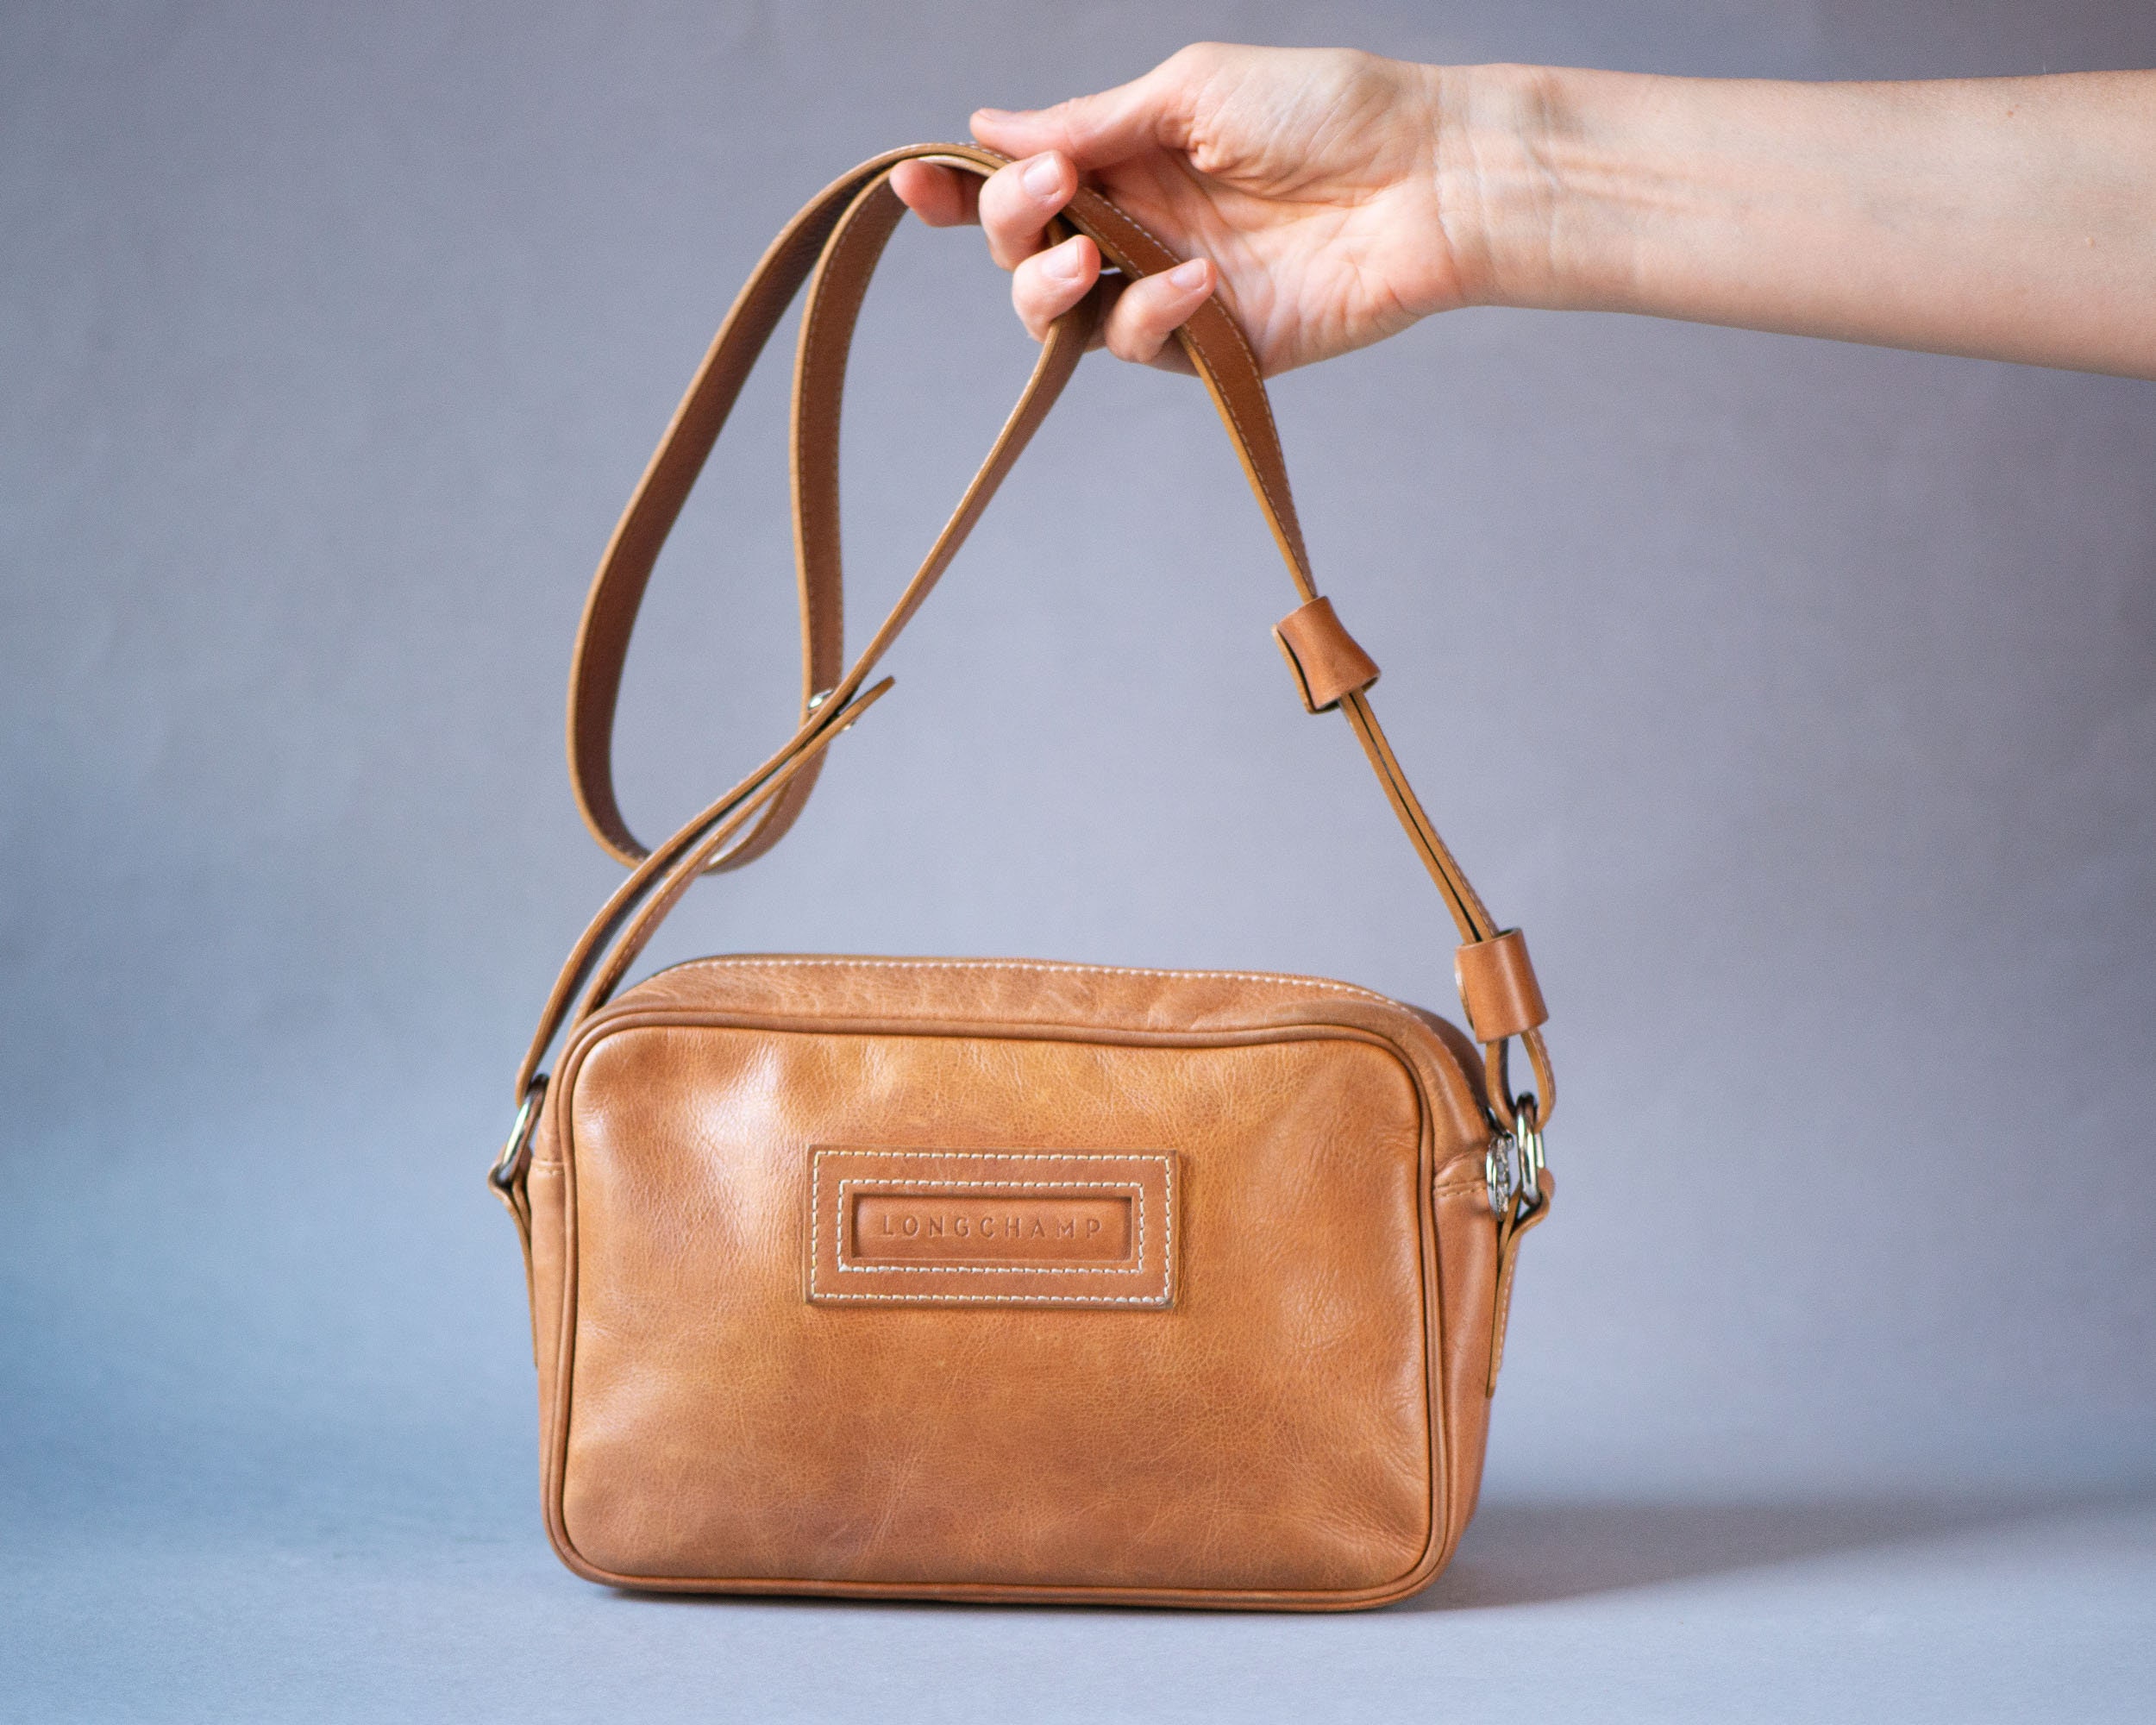 Longchamp Small Brown Leather Shoulder Bag Vintage 90s Handbag Purse